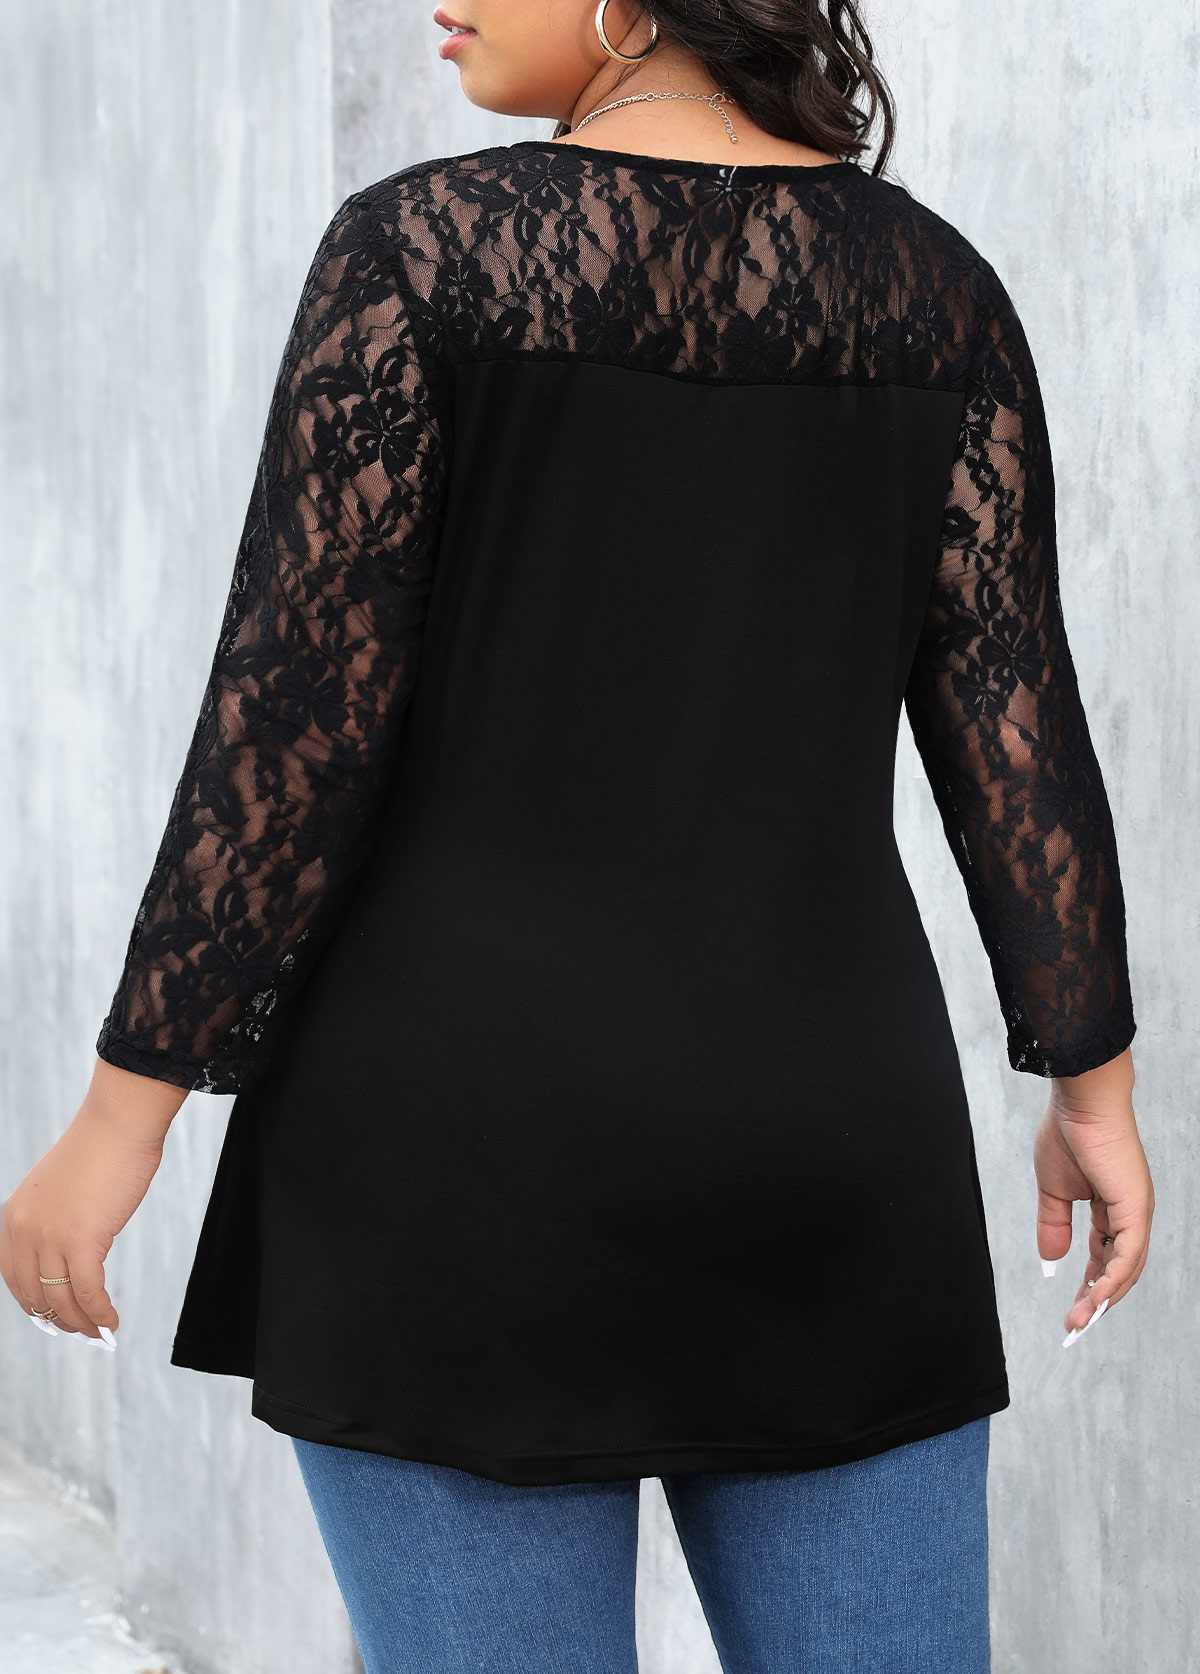 Lace Stitching Plus Size Black T Shirt